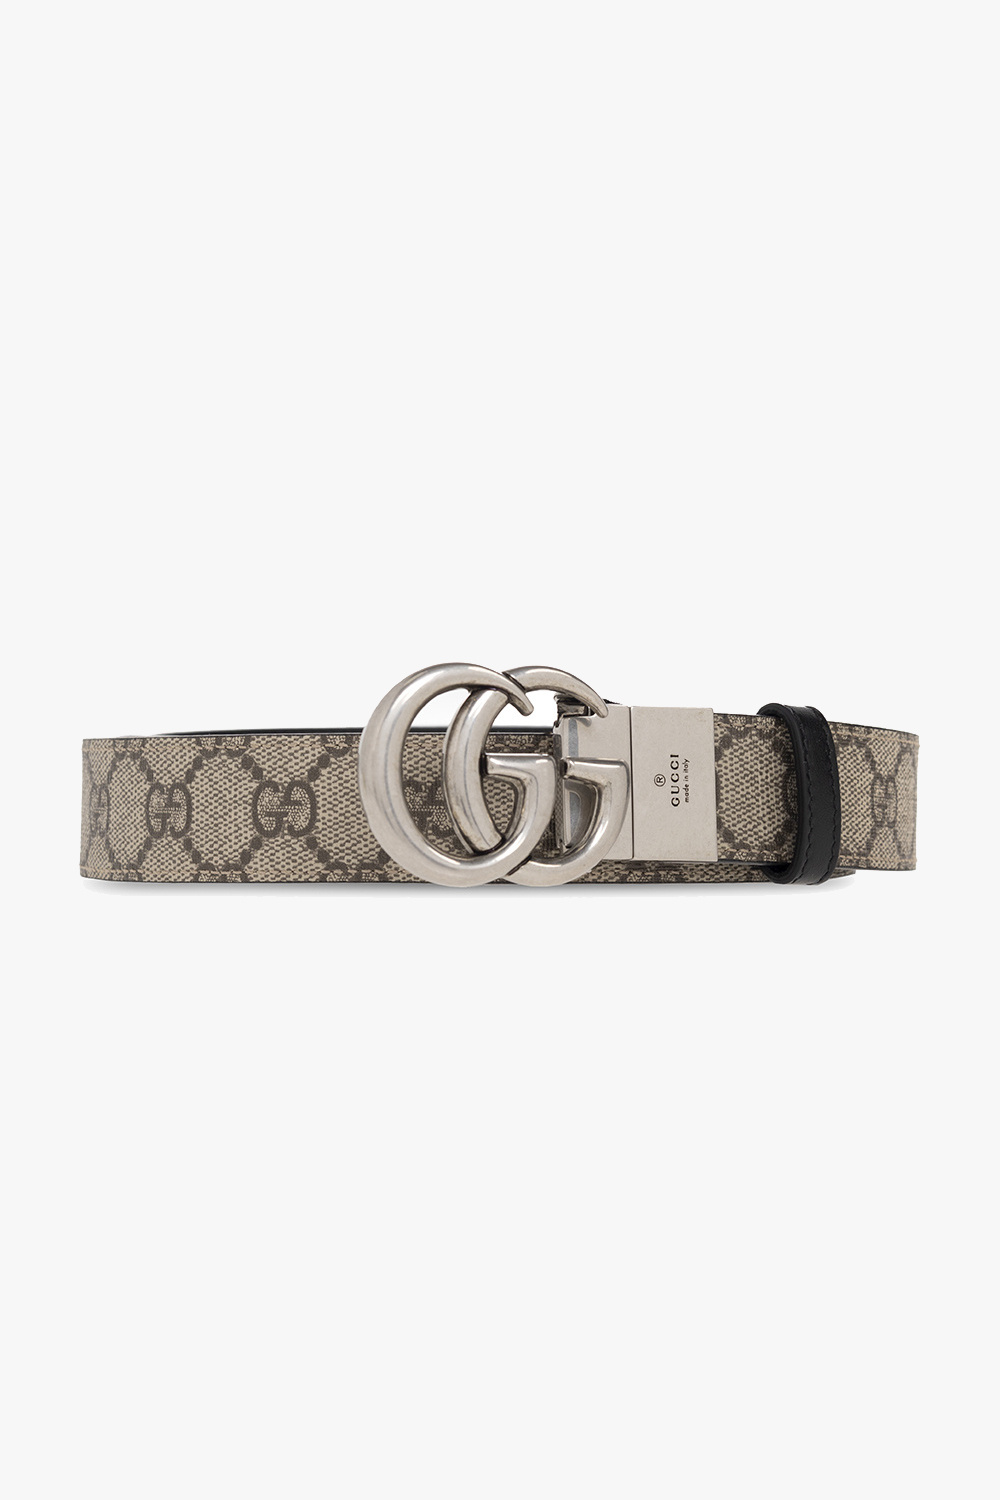 Palace x Gucci GG-P Supreme G Reversible Belt